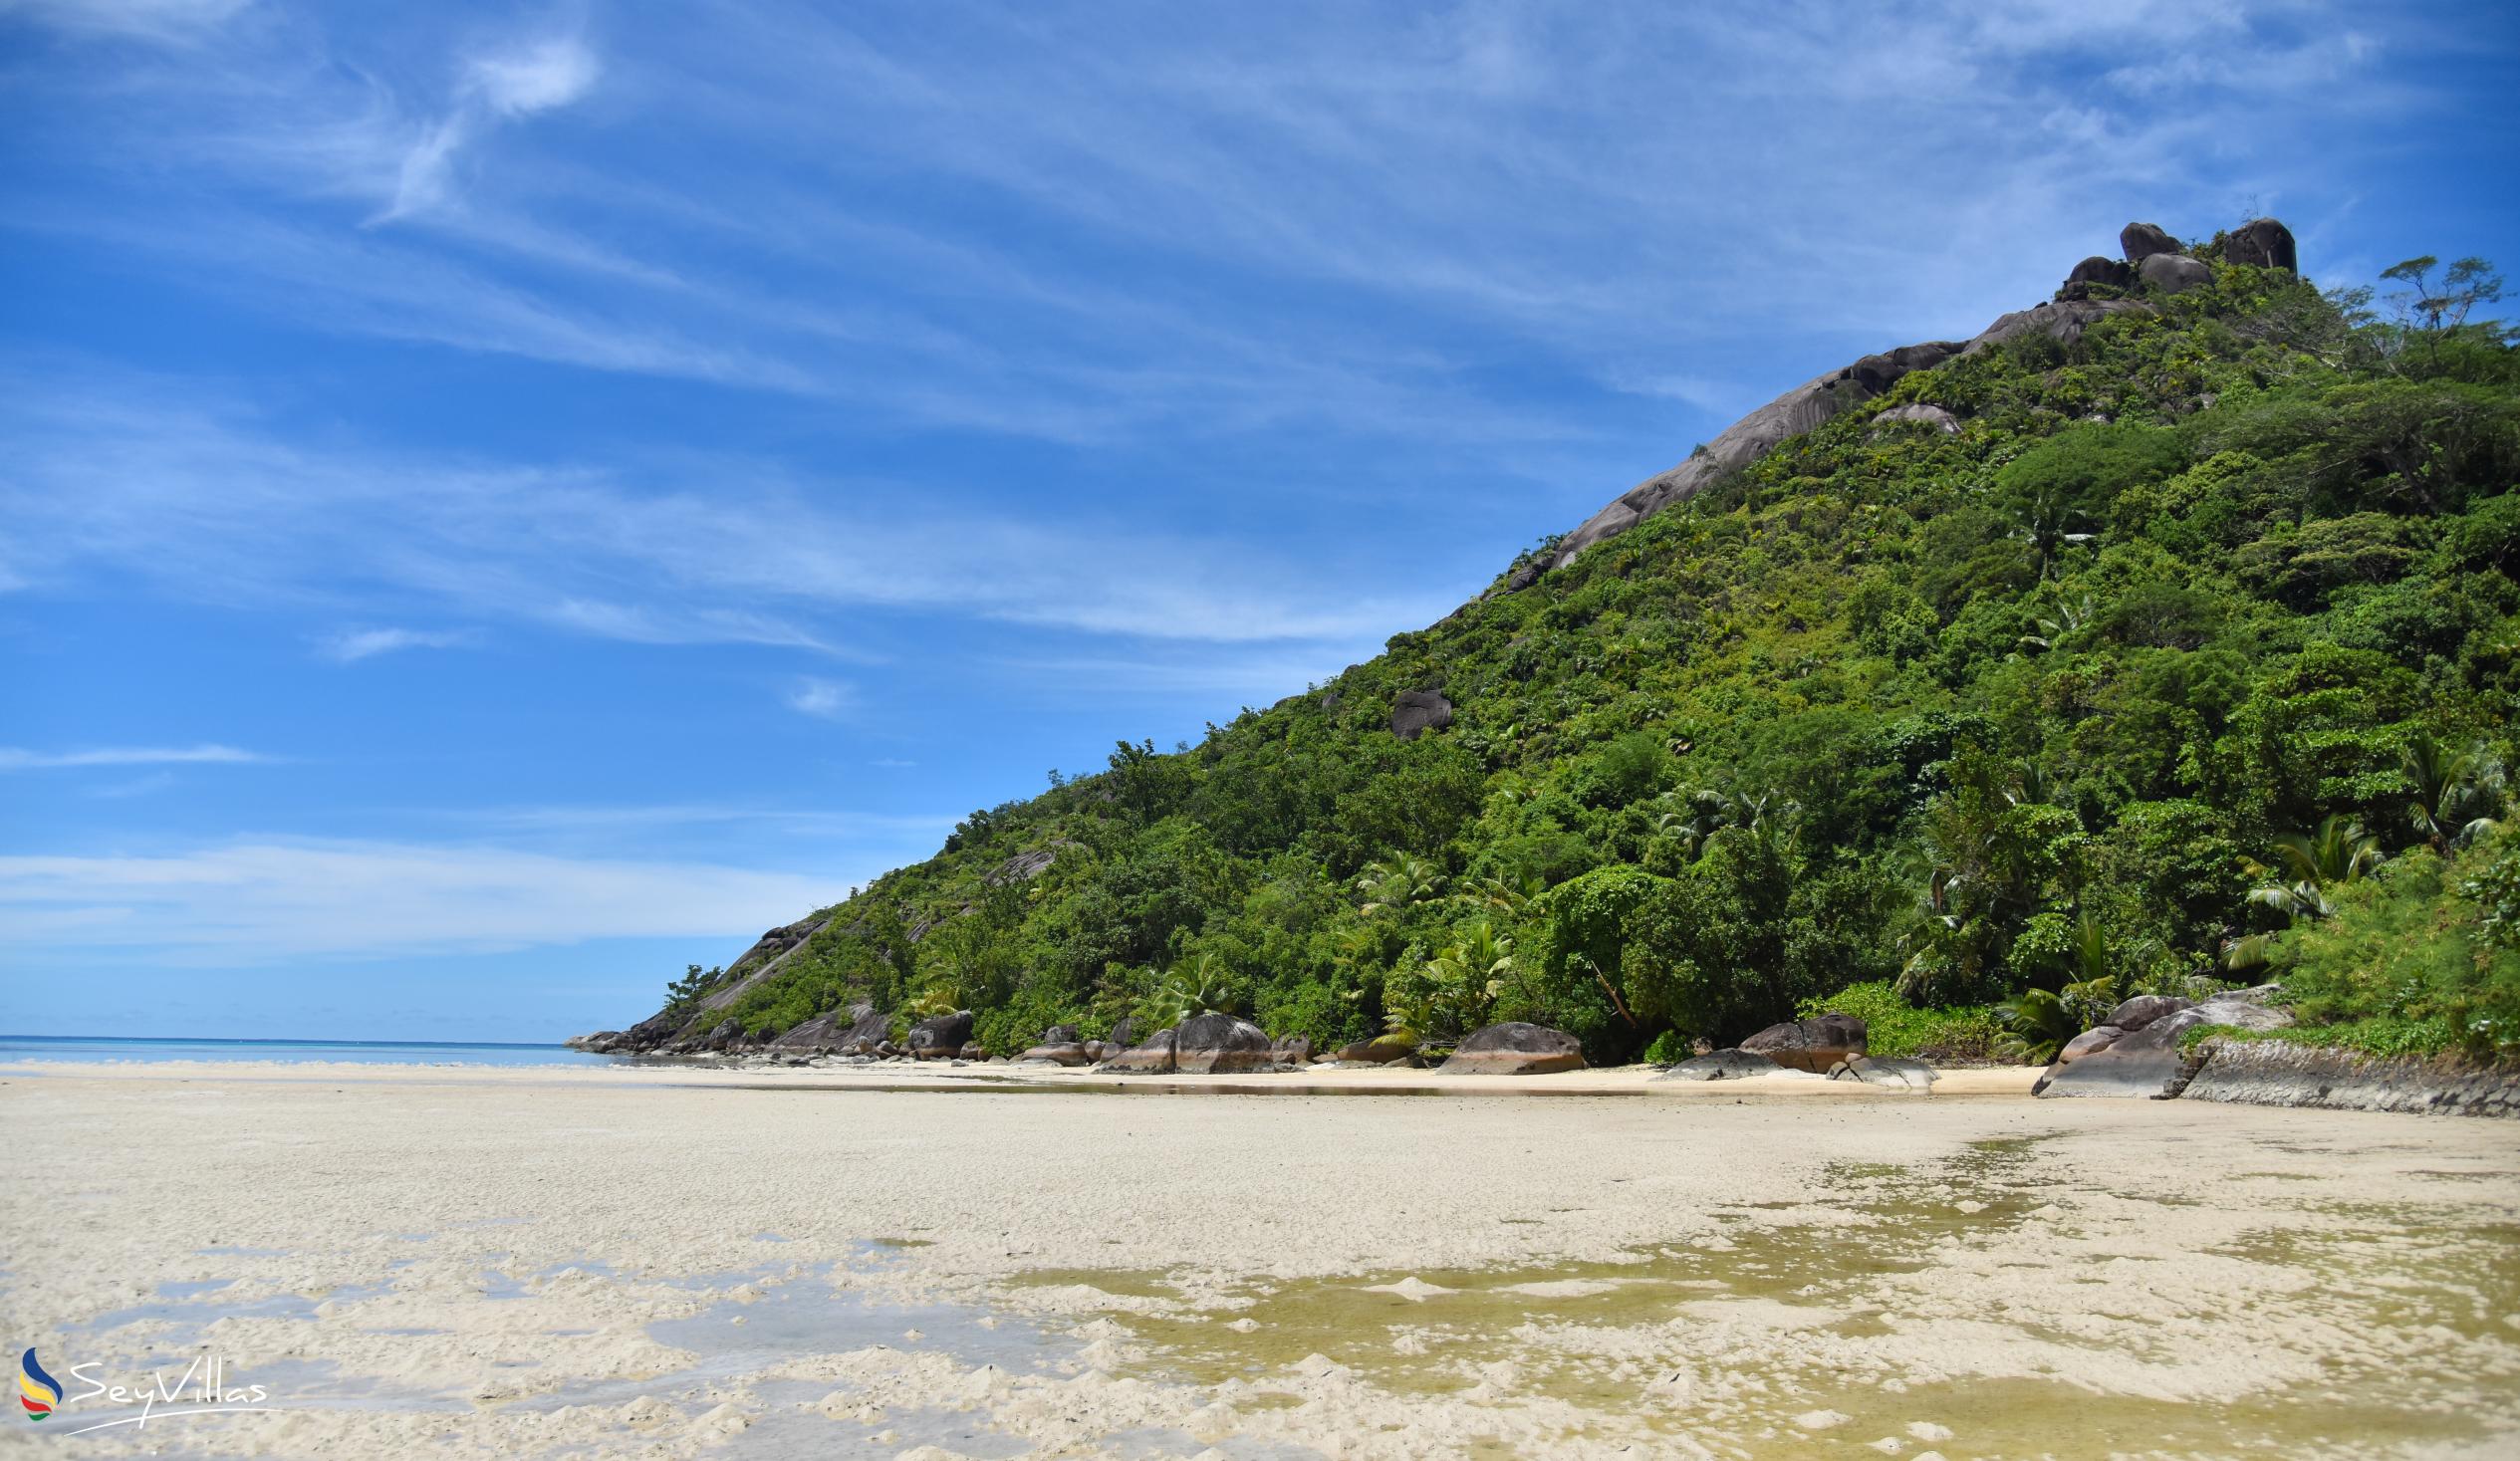 Photo 19: Baie Ternay - Mahé (Seychelles)